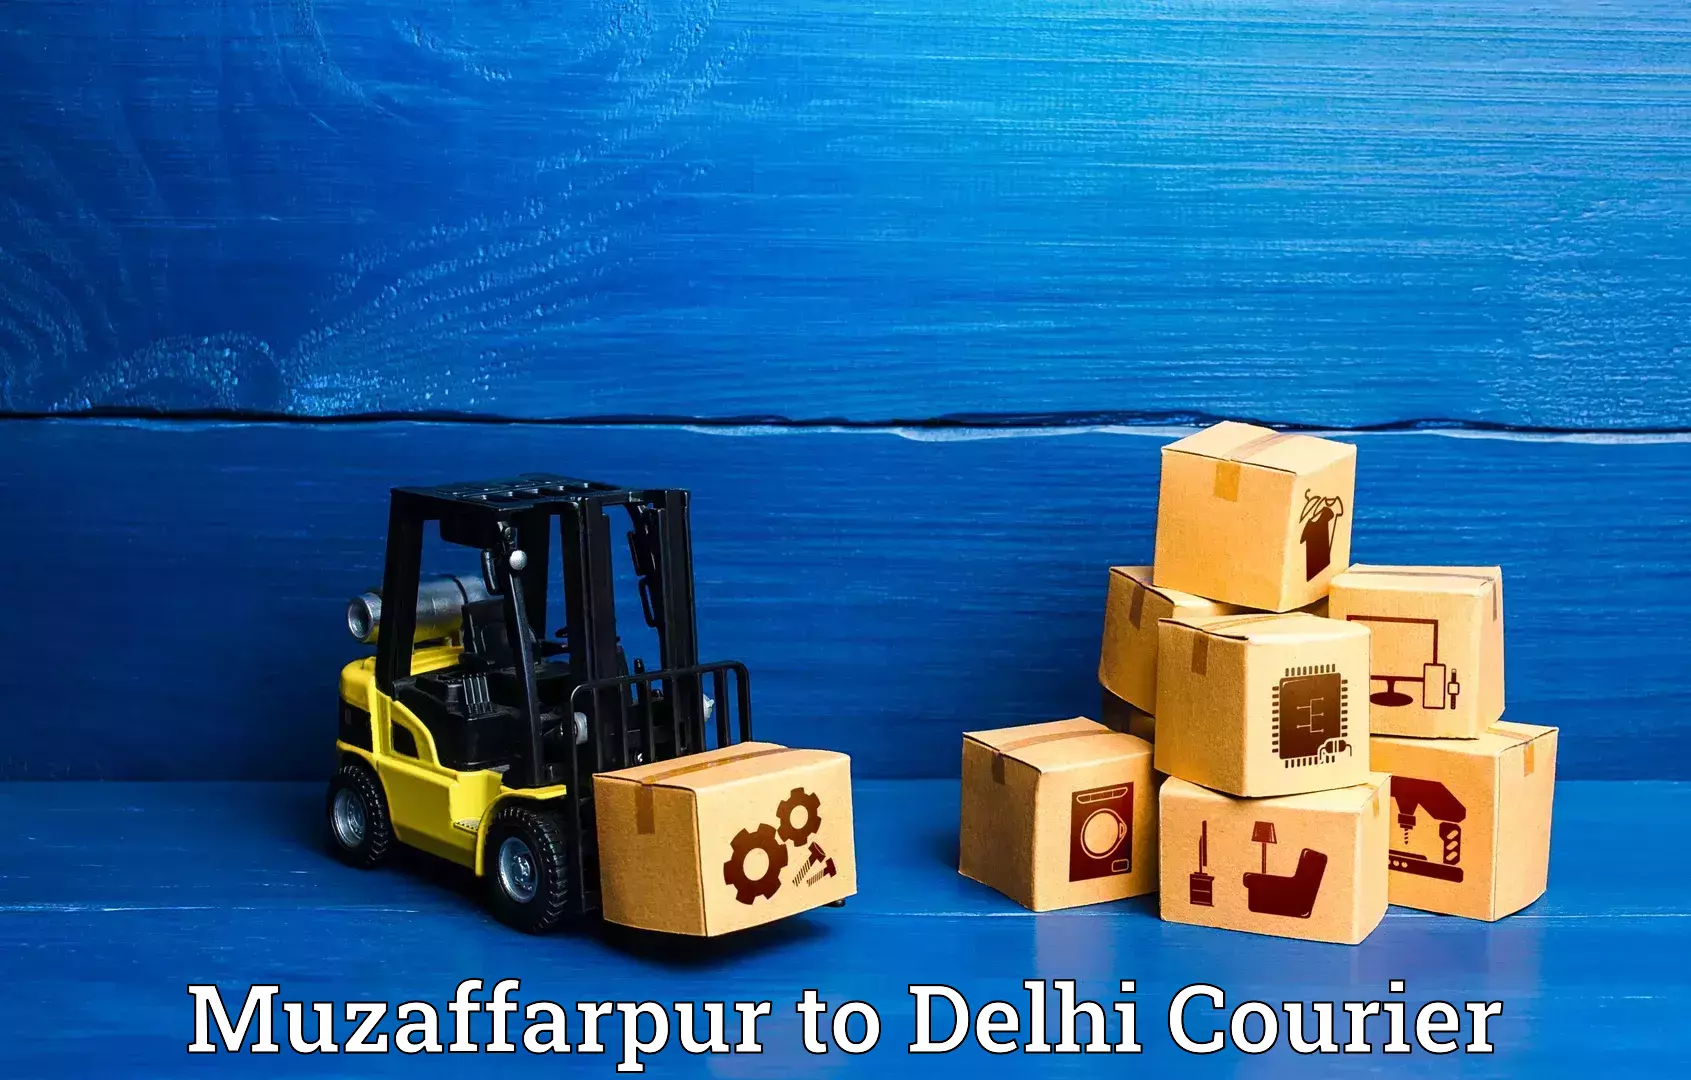 Baggage relocation service Muzaffarpur to Jamia Millia Islamia New Delhi